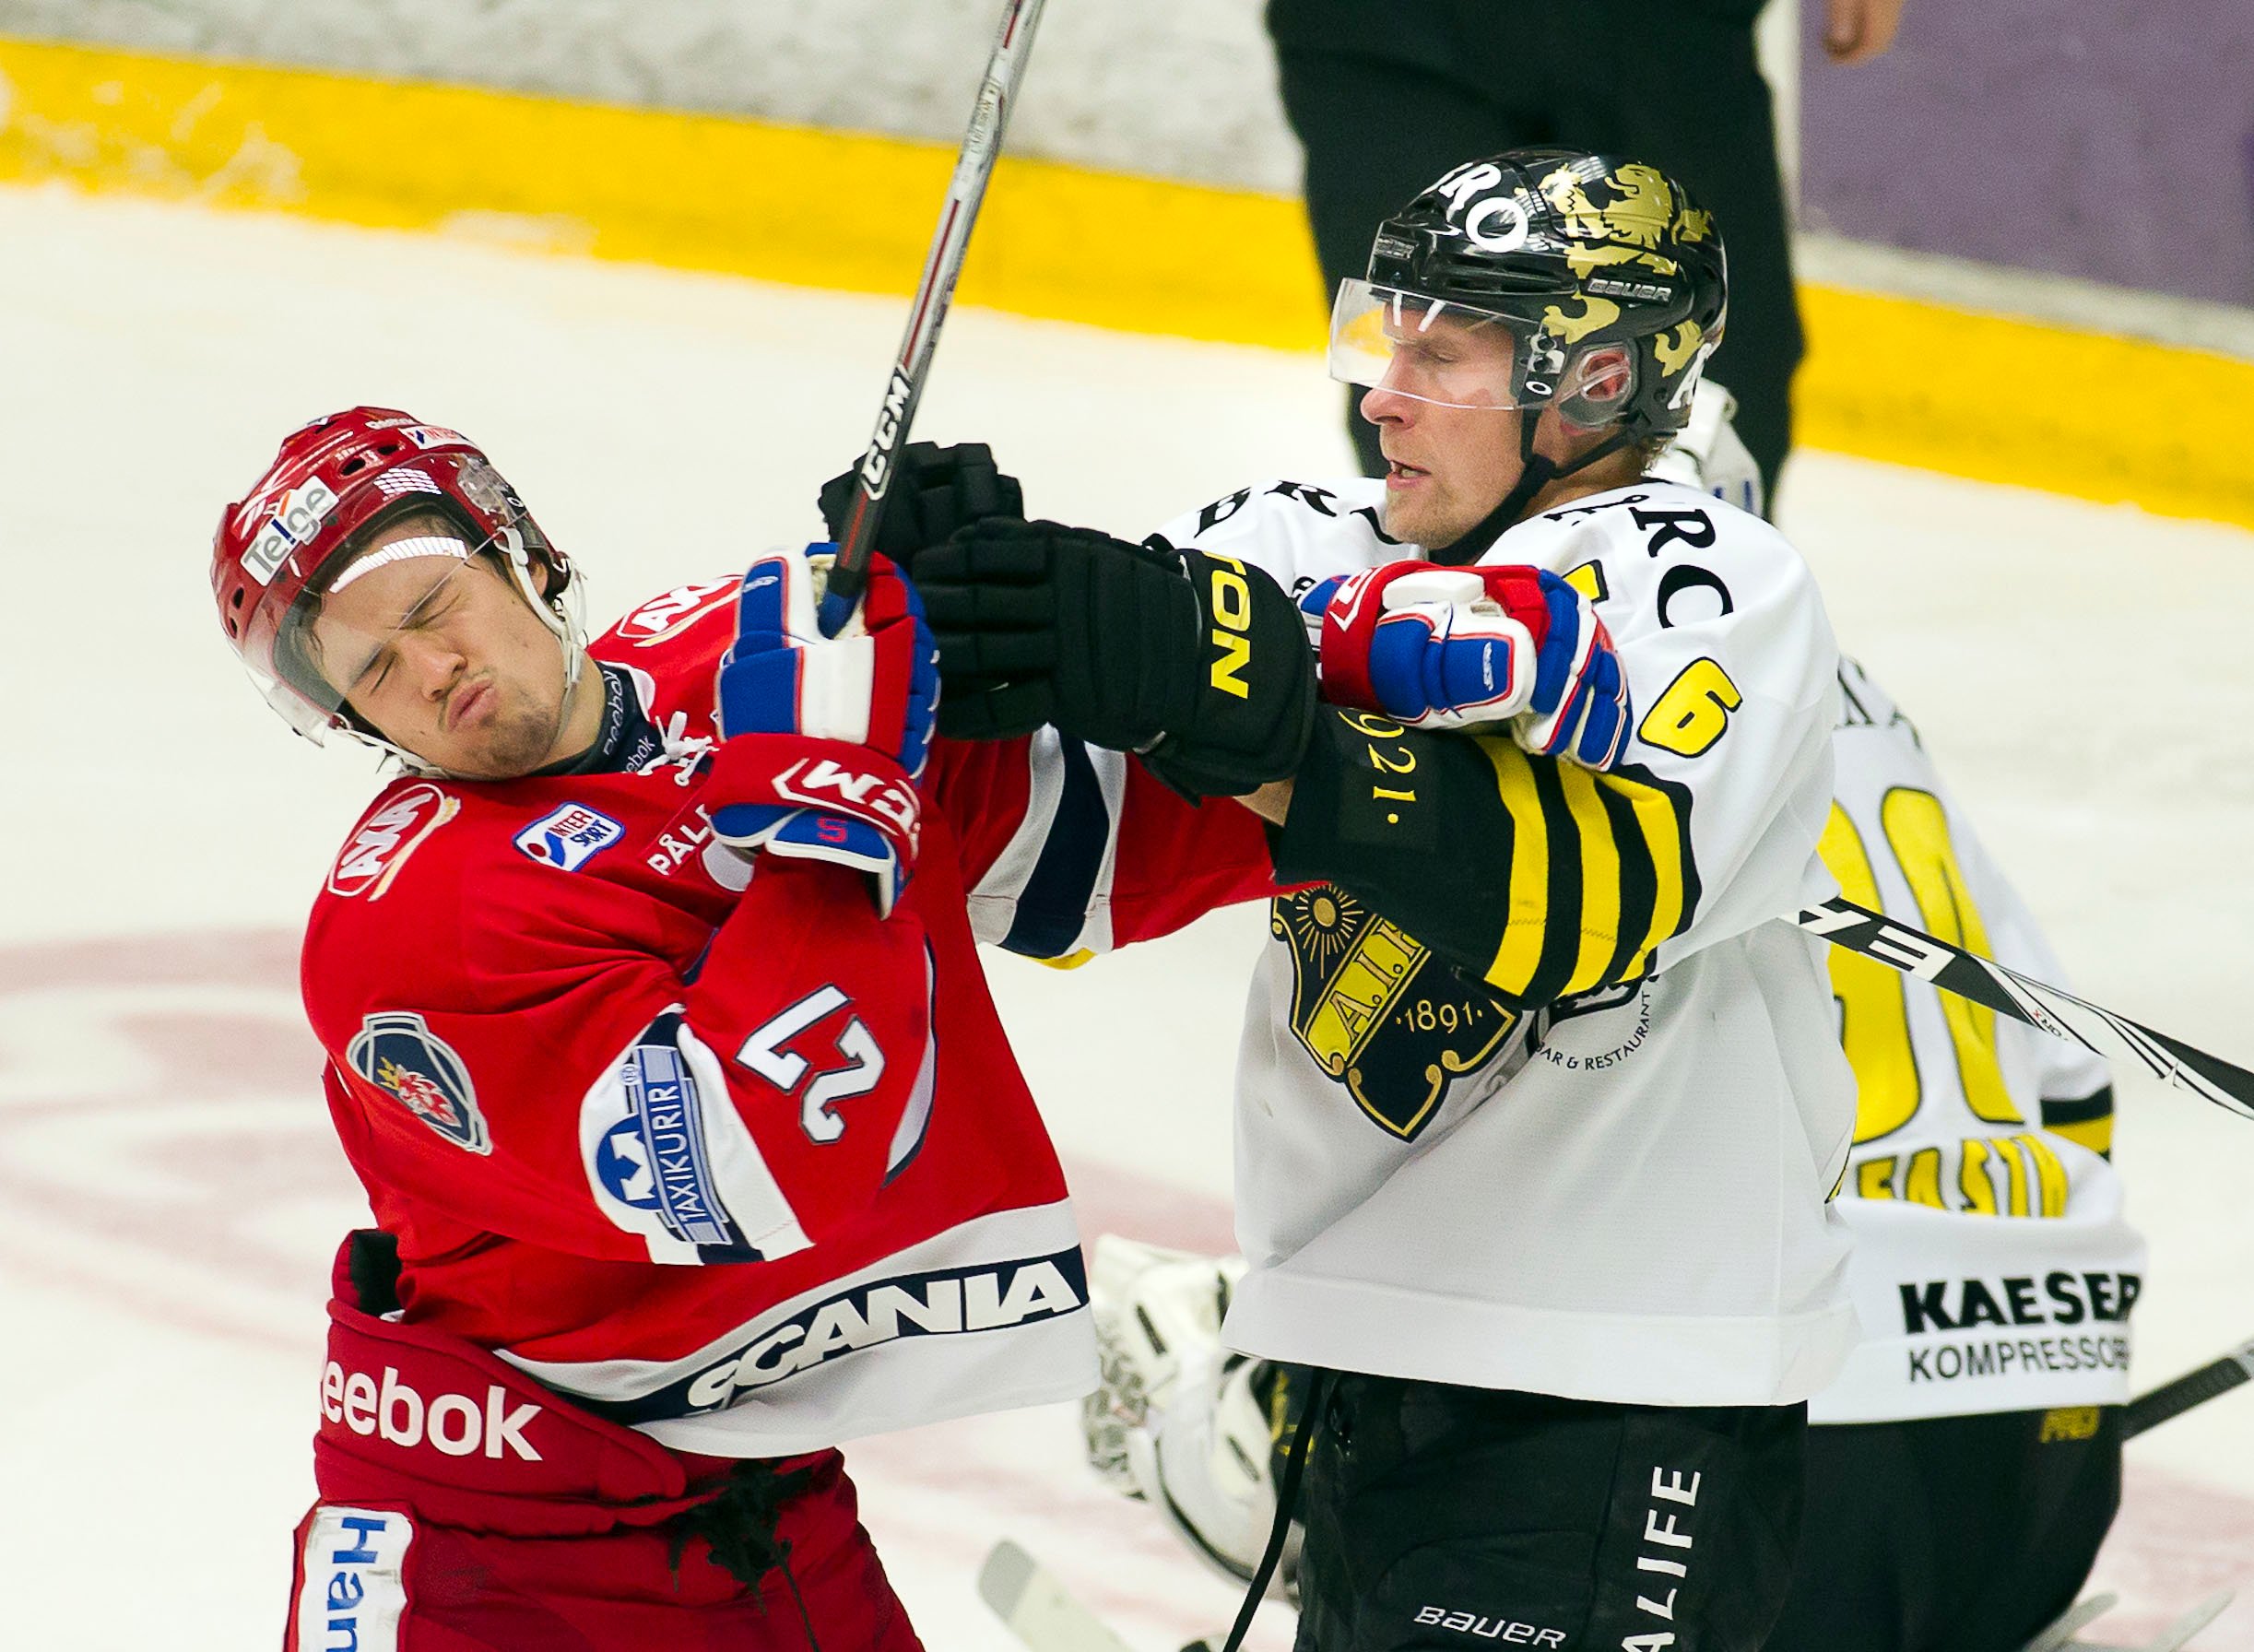 Dick Tärnström klockade mycket istid under veckan och bidrog starkt till det lugna och fräscha spelet AIK visar upp. Noterades även för ett mål och en assist på de tre matcherna och spelade 3-0 i spel med lika manskap på isen.